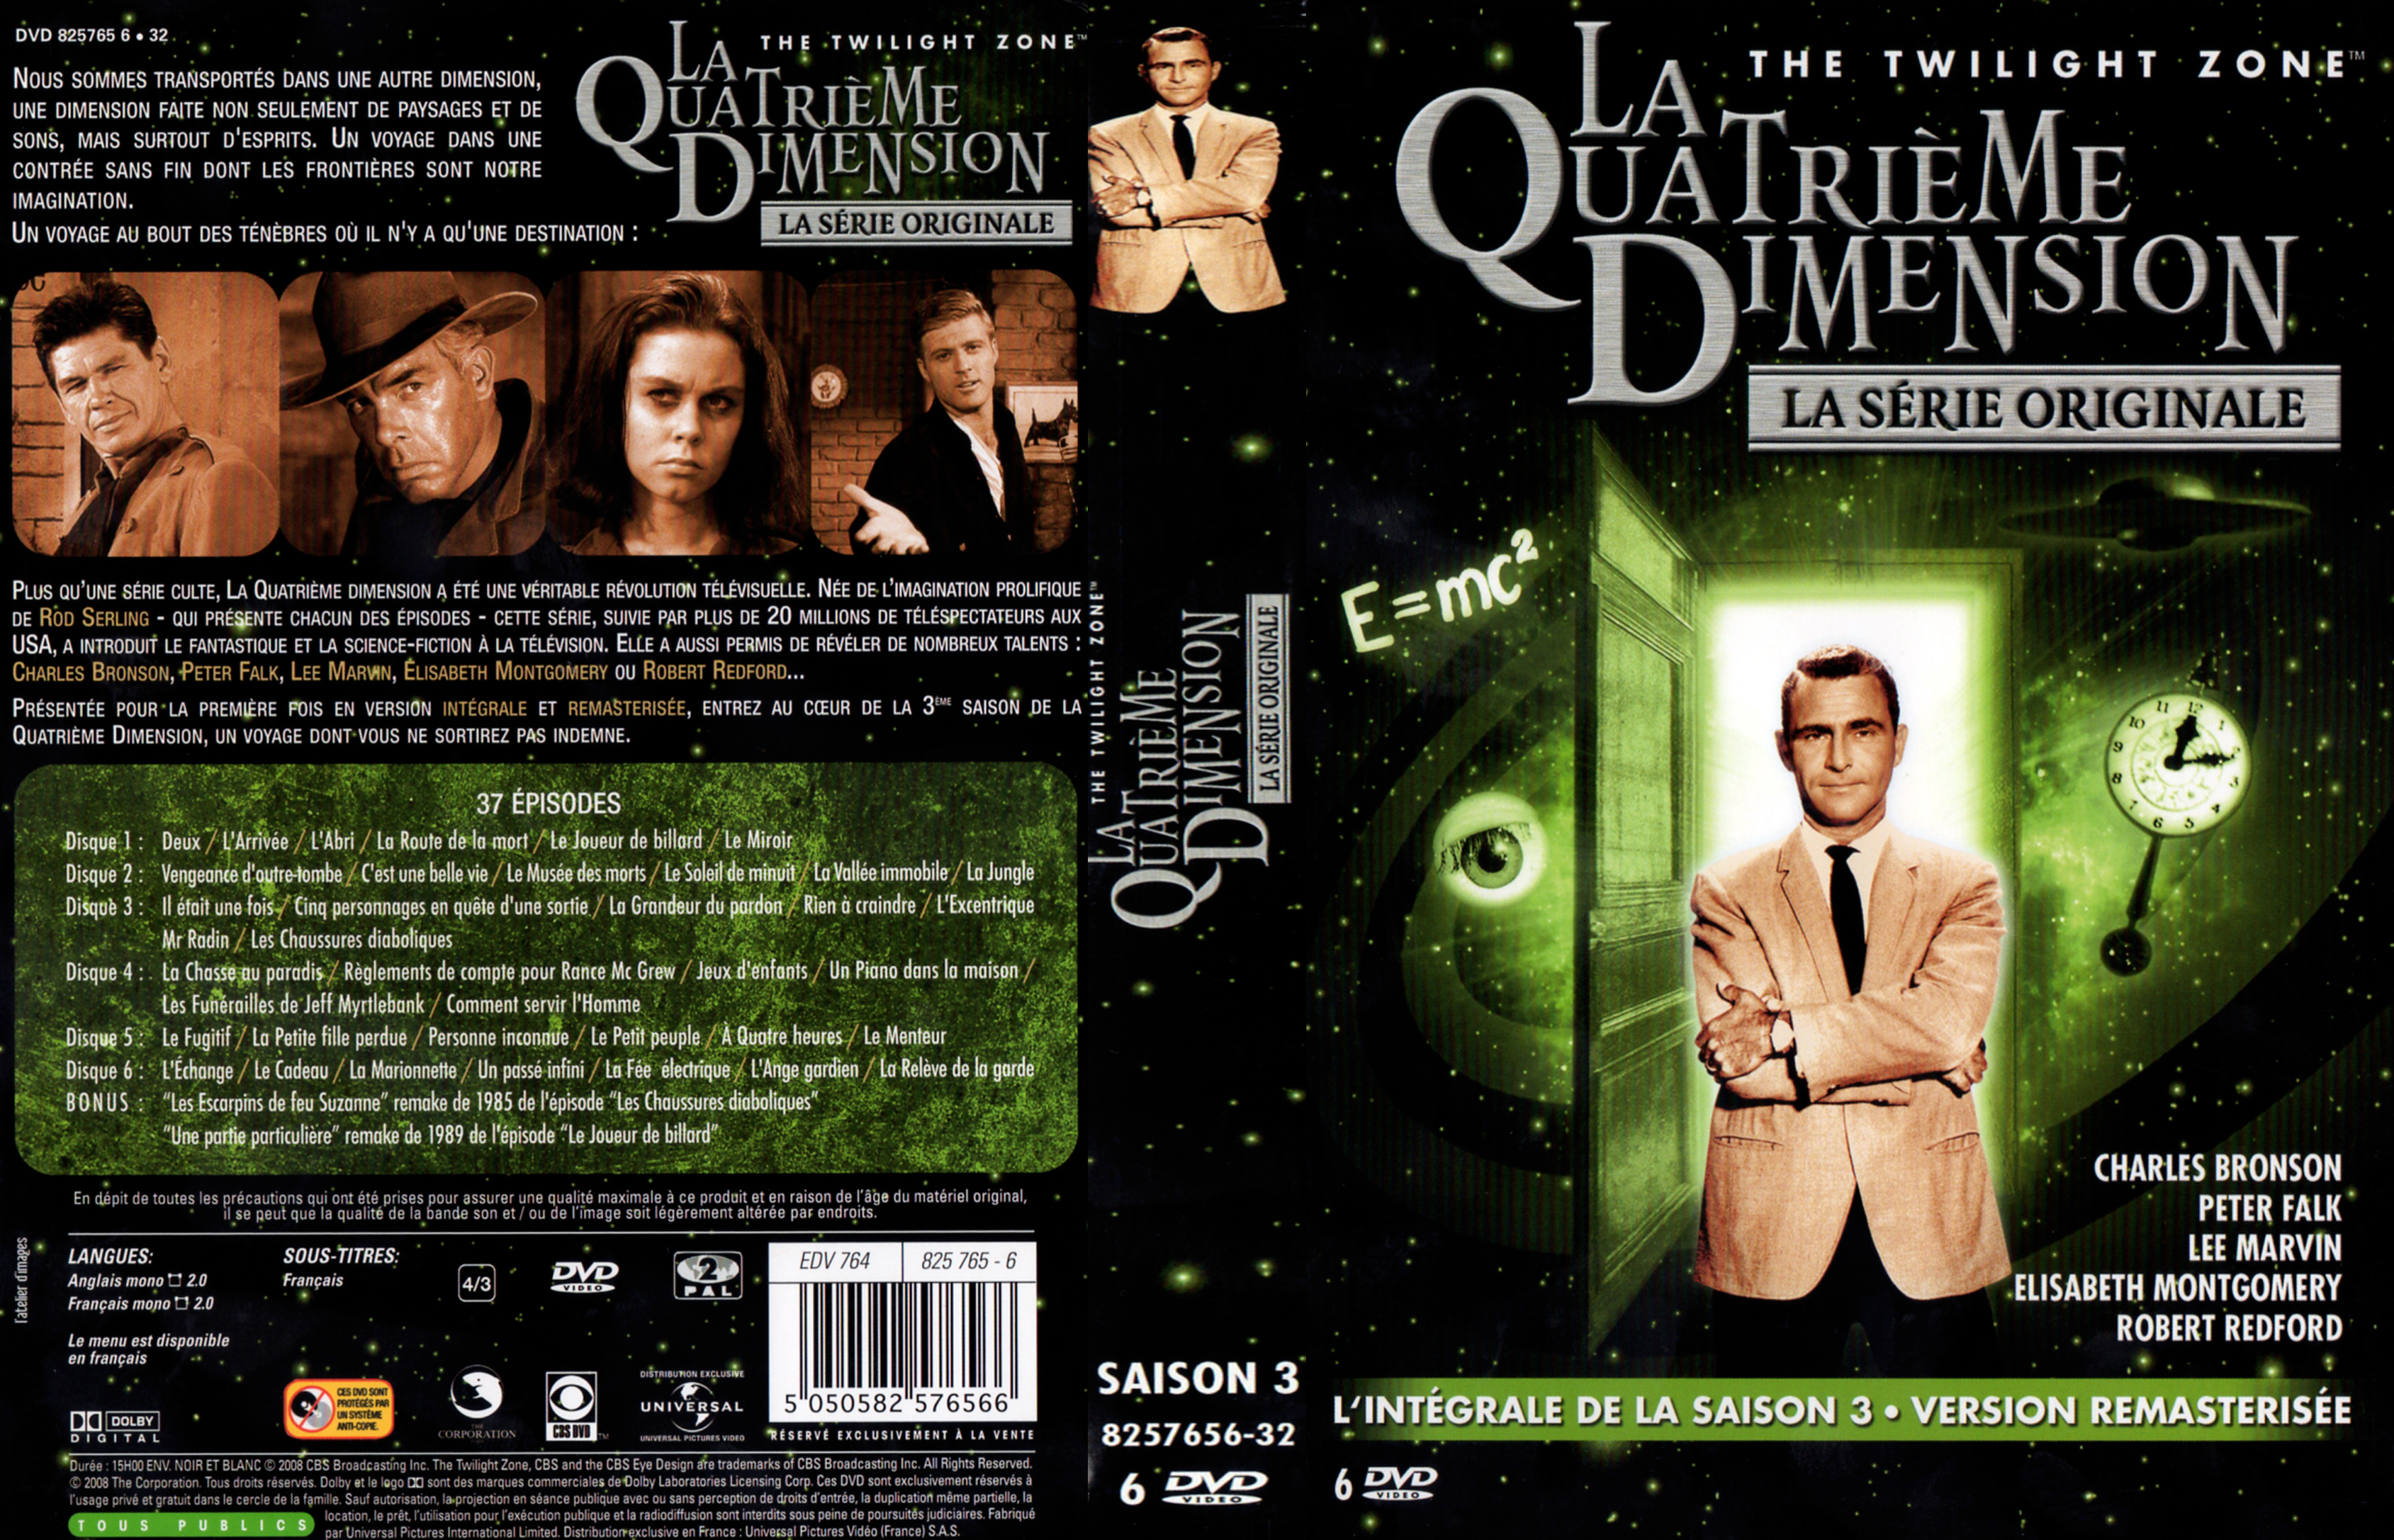 Jaquette DVD La quatrime dimension Saison 3 COFFRET